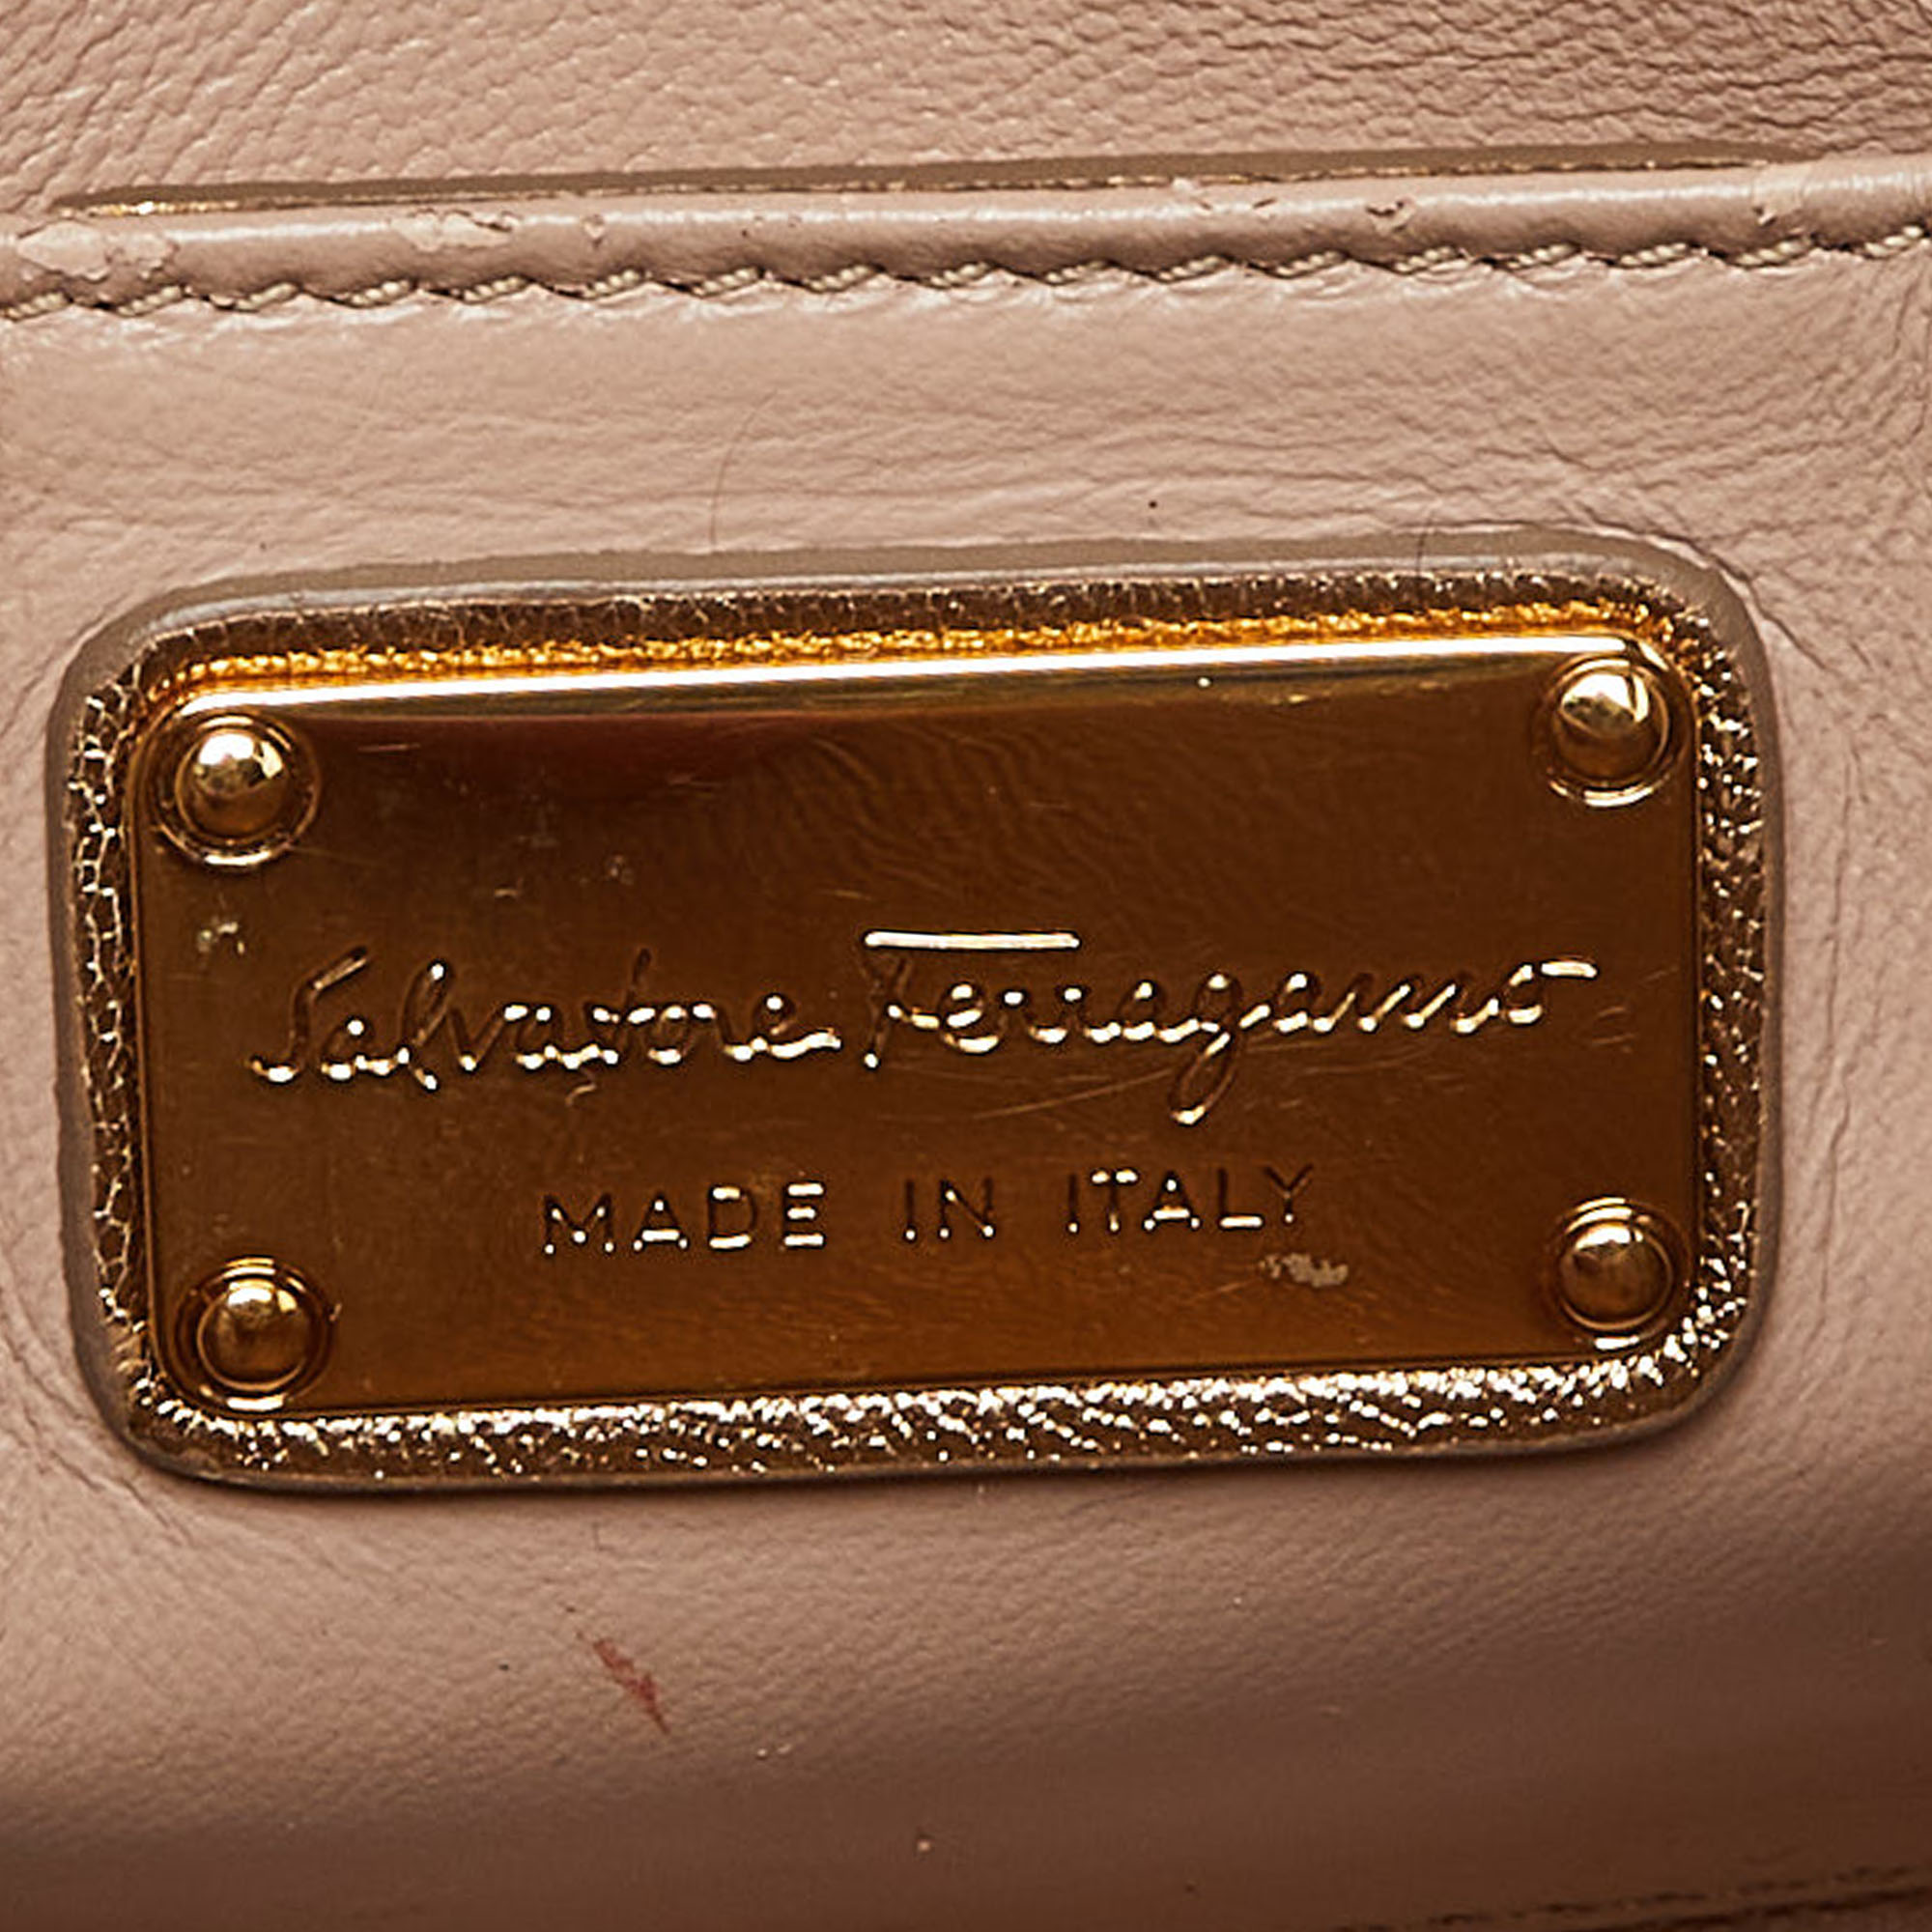 Salvatore Ferragamo Gold Leather Mini Sofia Top Handle Bag